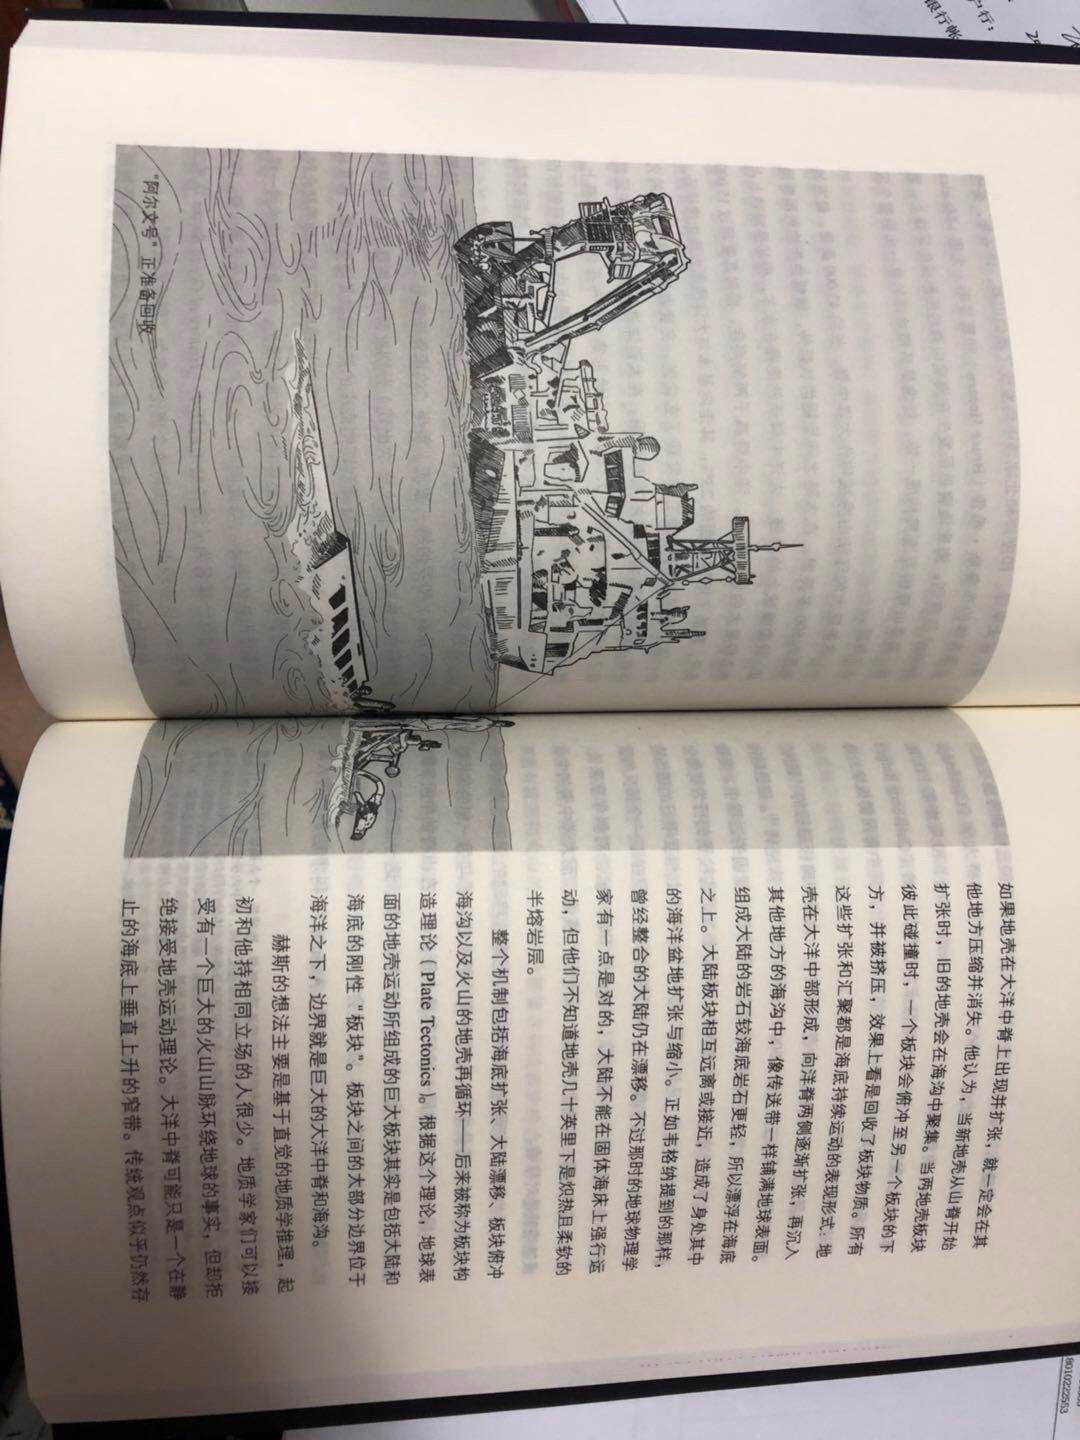 作者是泰坦尼克号沉船的发现者 书中内容很有趣翻译得很好 译者是蛟龙号的设计师 相得益彰 讲了很多深海的生物和海洋考古的东西 插图很精美 物流很快 包装仔细 正版图书